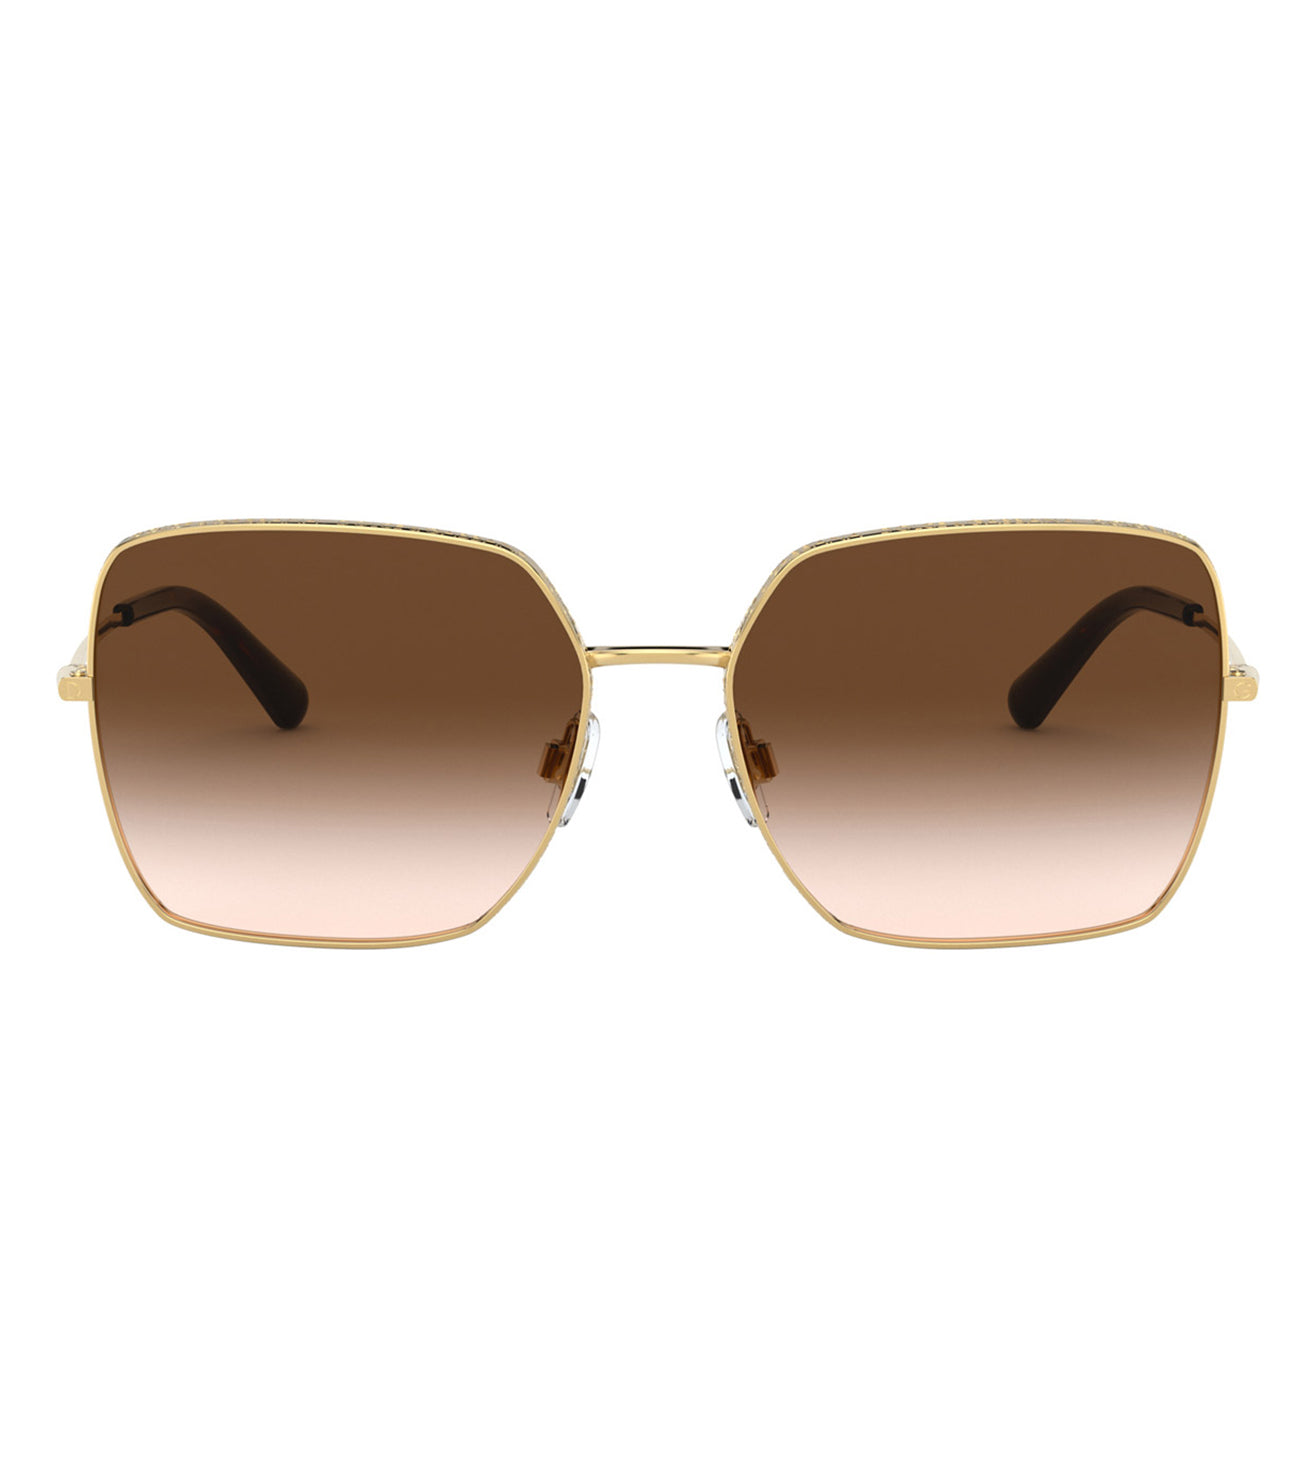 Square Brown Sunglasses